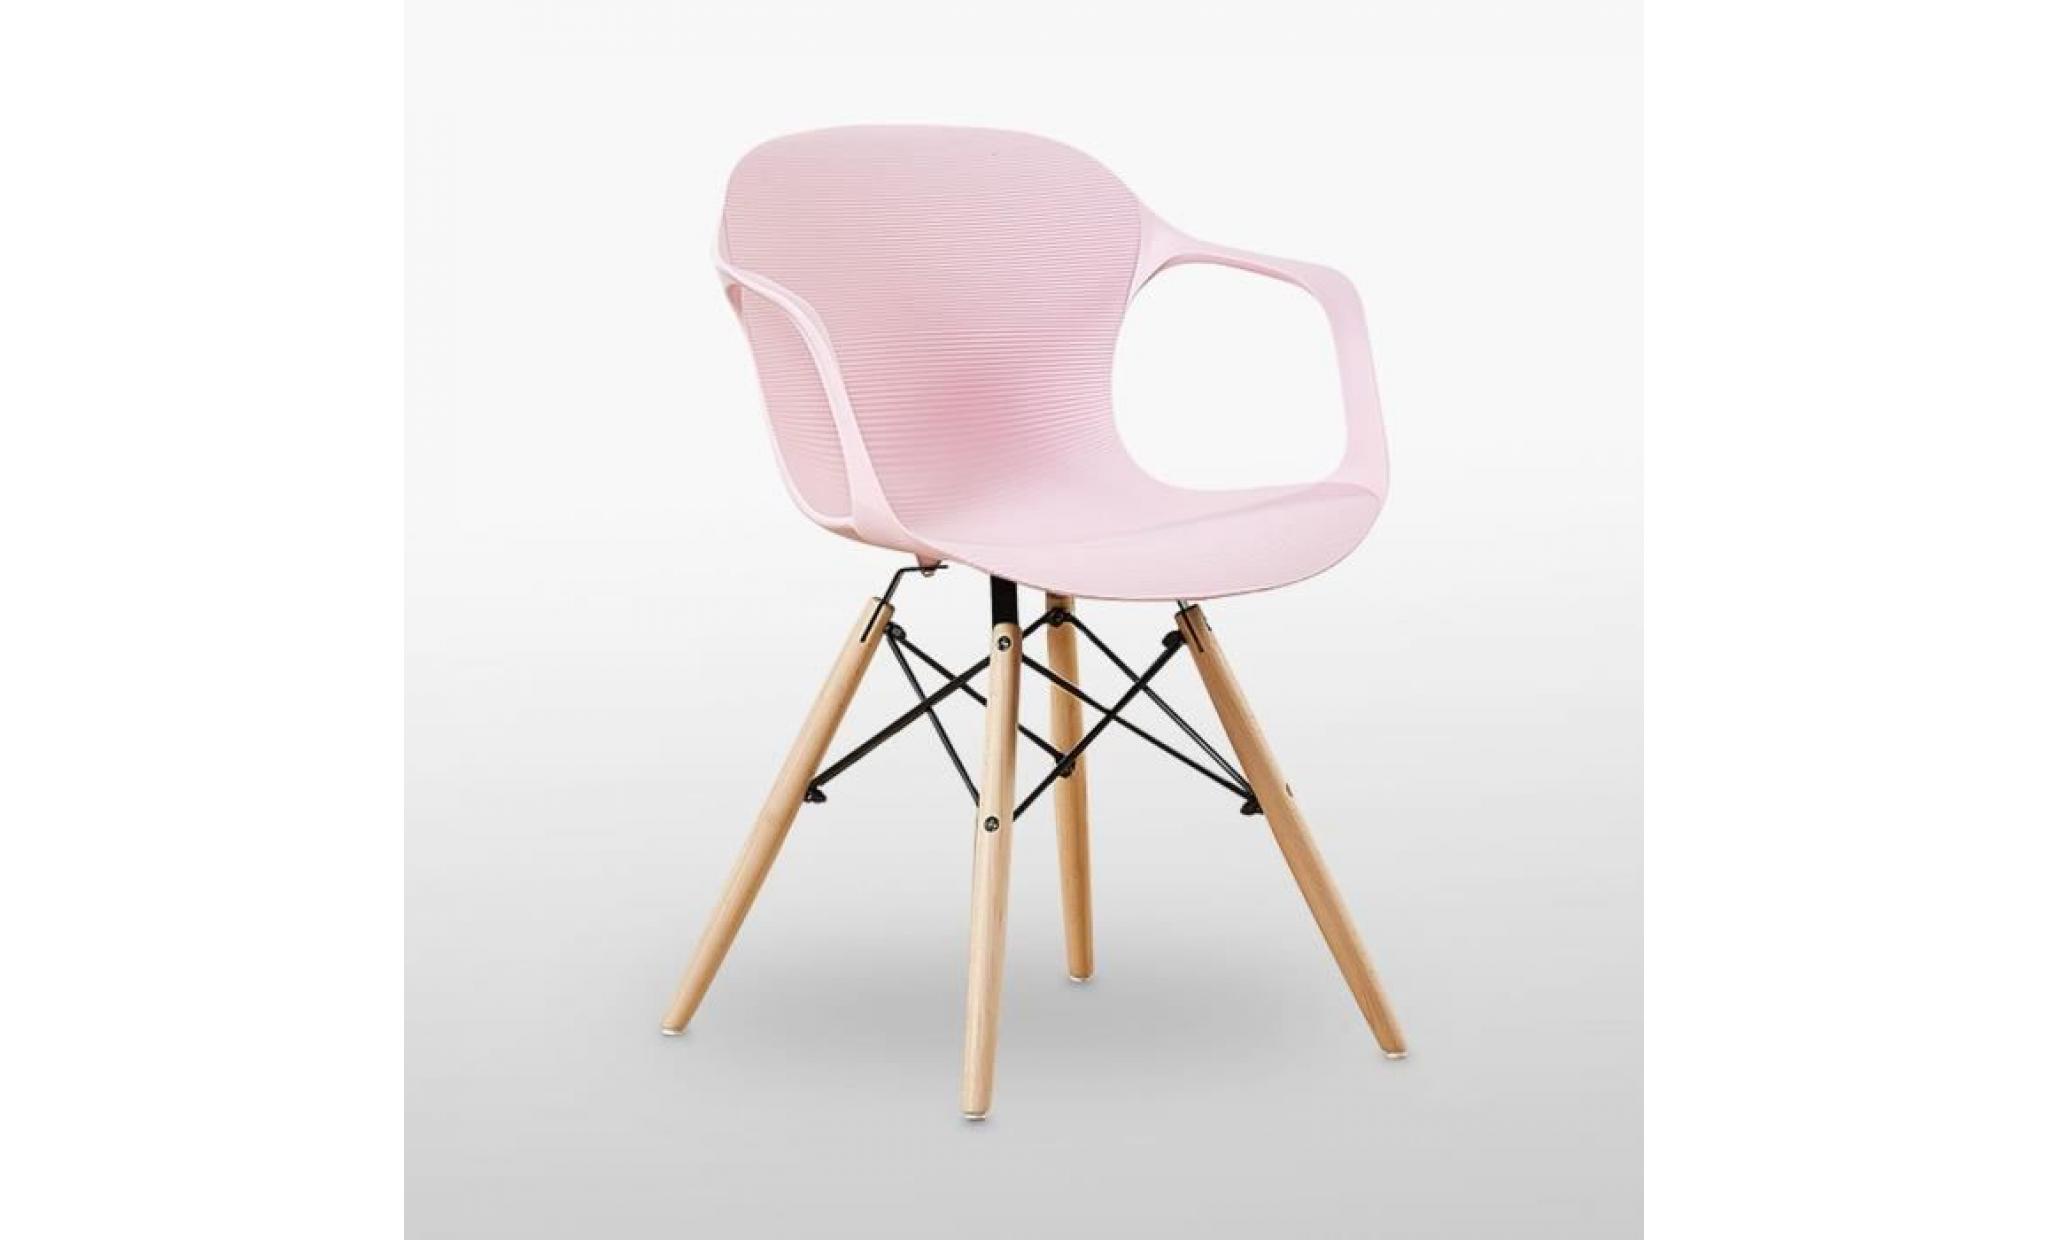 table à manger effet chêne + 4 chaises modernes roses   salle à manger, salon, cuisine   design contemporain   alecia halo pas cher